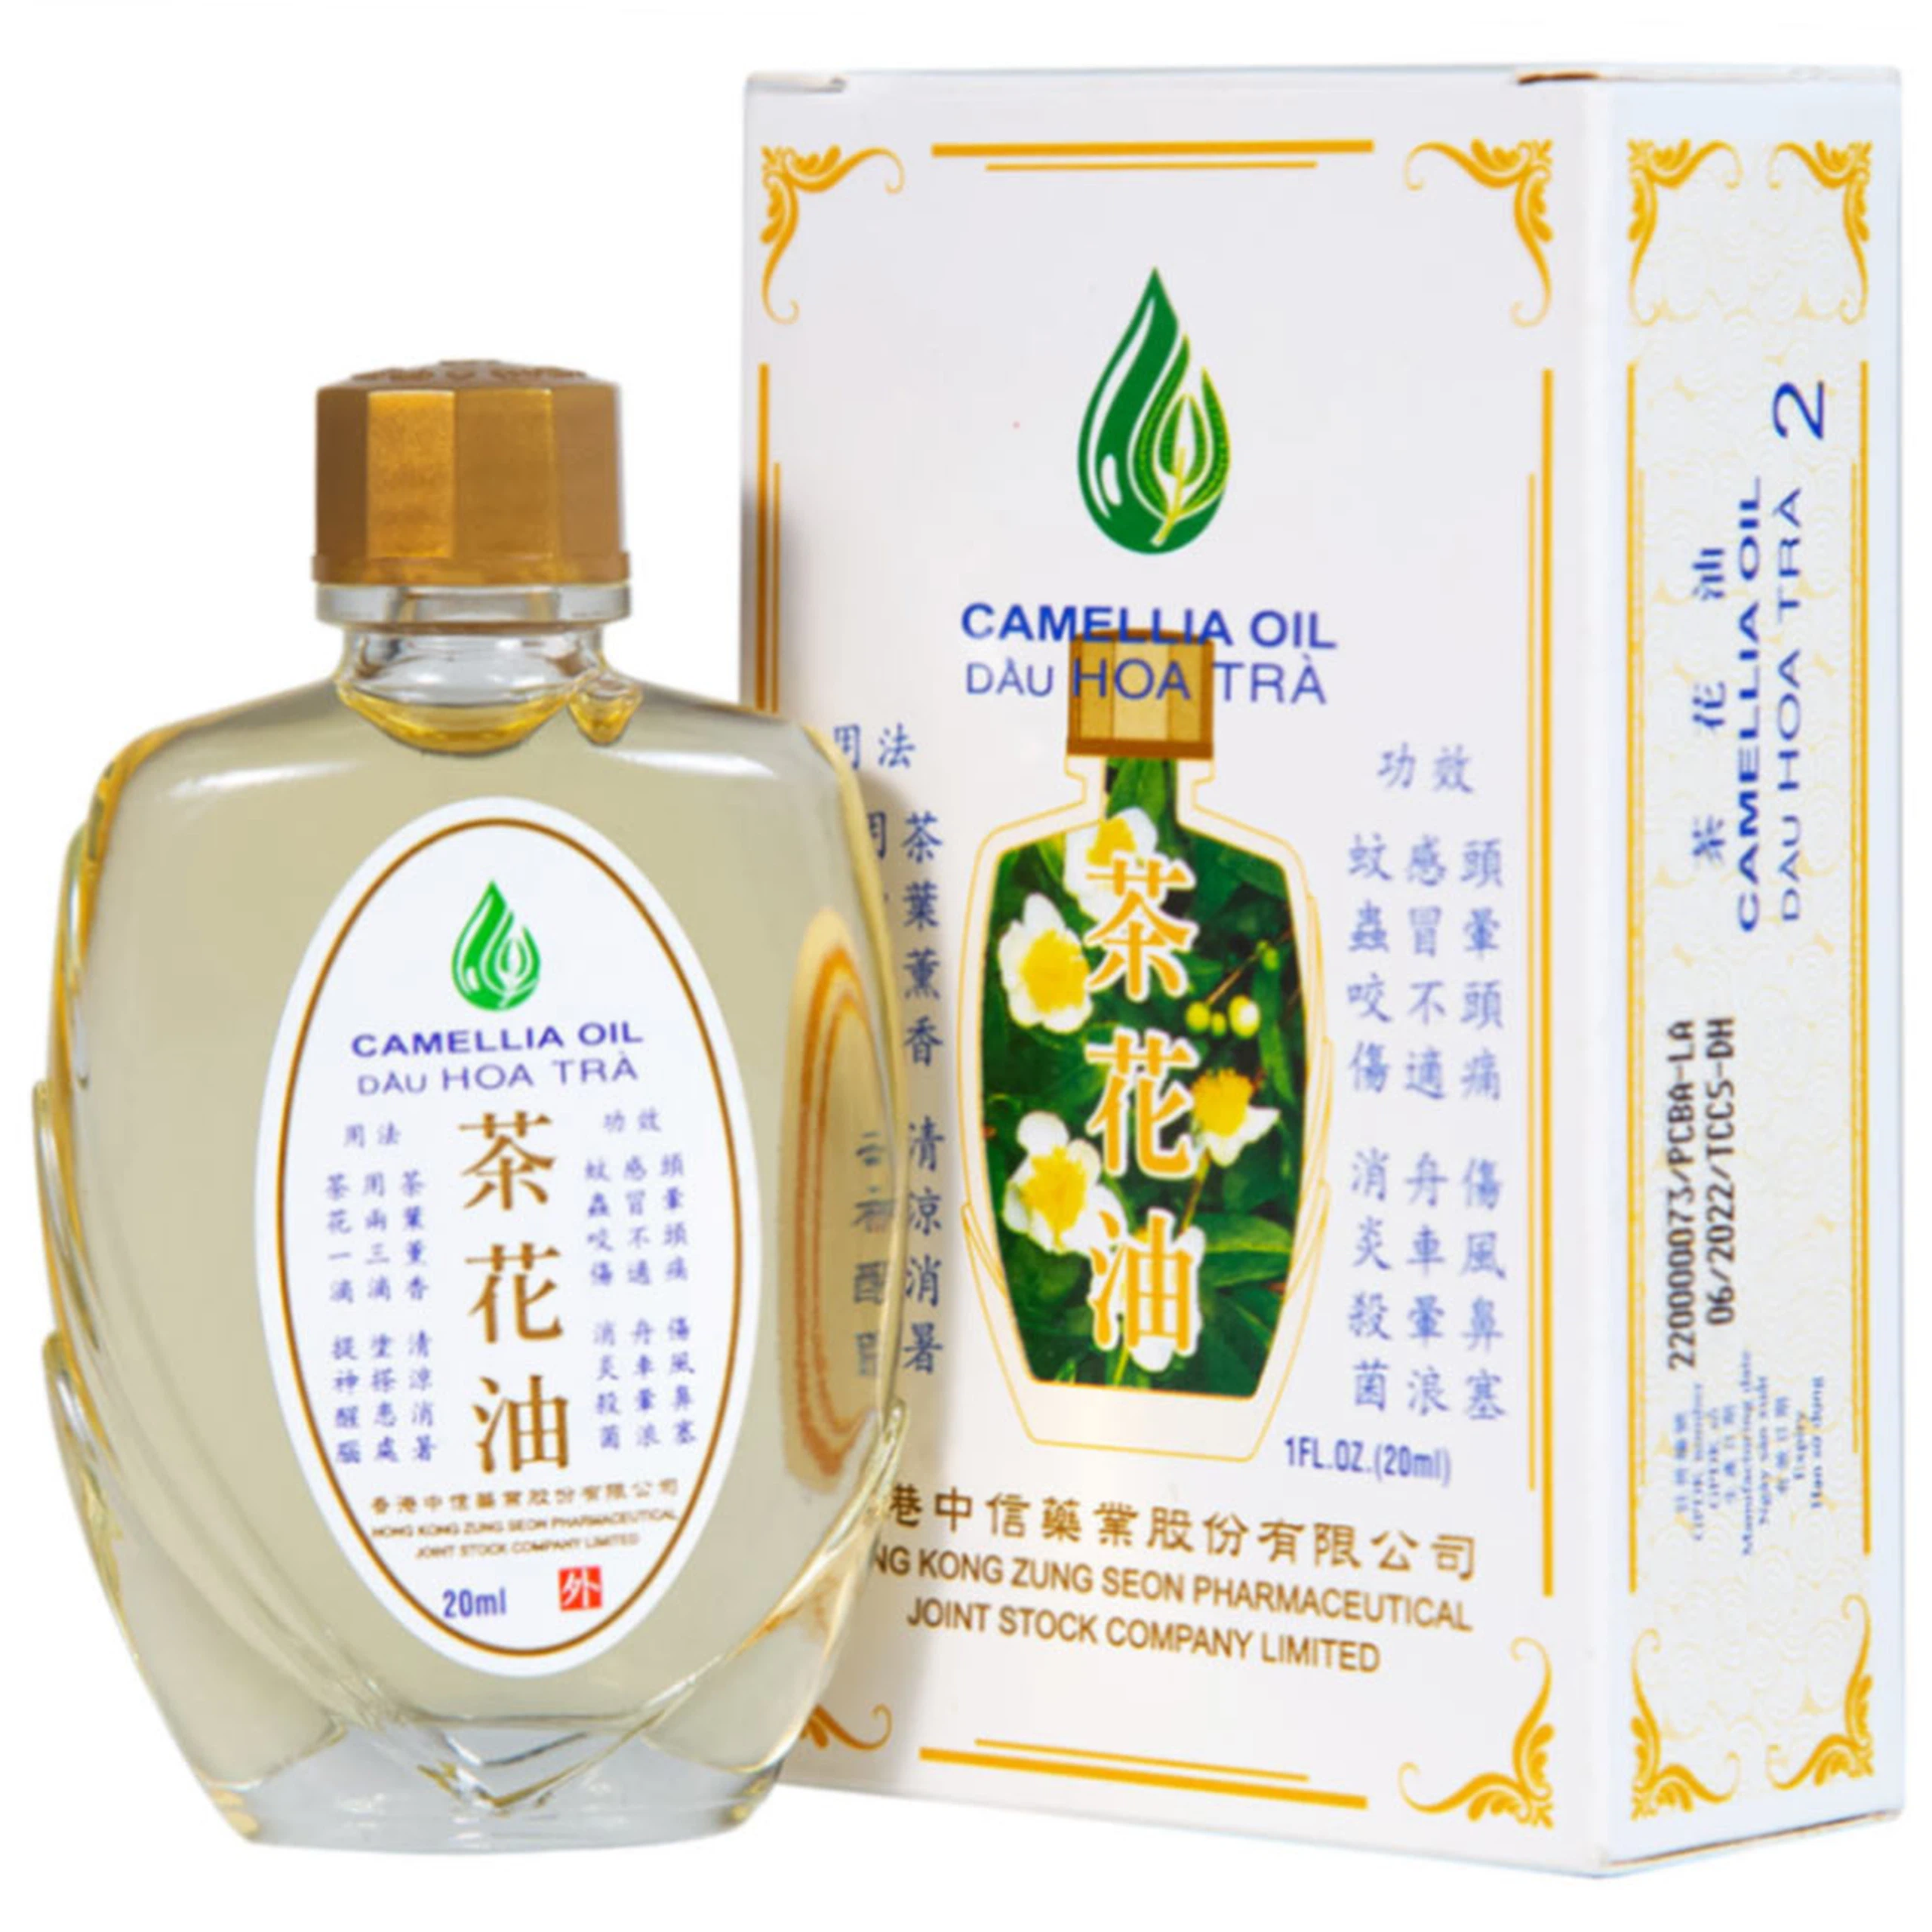 Dầu Hoa Trà Camellia Oil Hong Kong Zung Seon hỗ trợ điều trị cảm cúm, nghẹt mũi, chóng mặt, nhứt đầu (20ml)